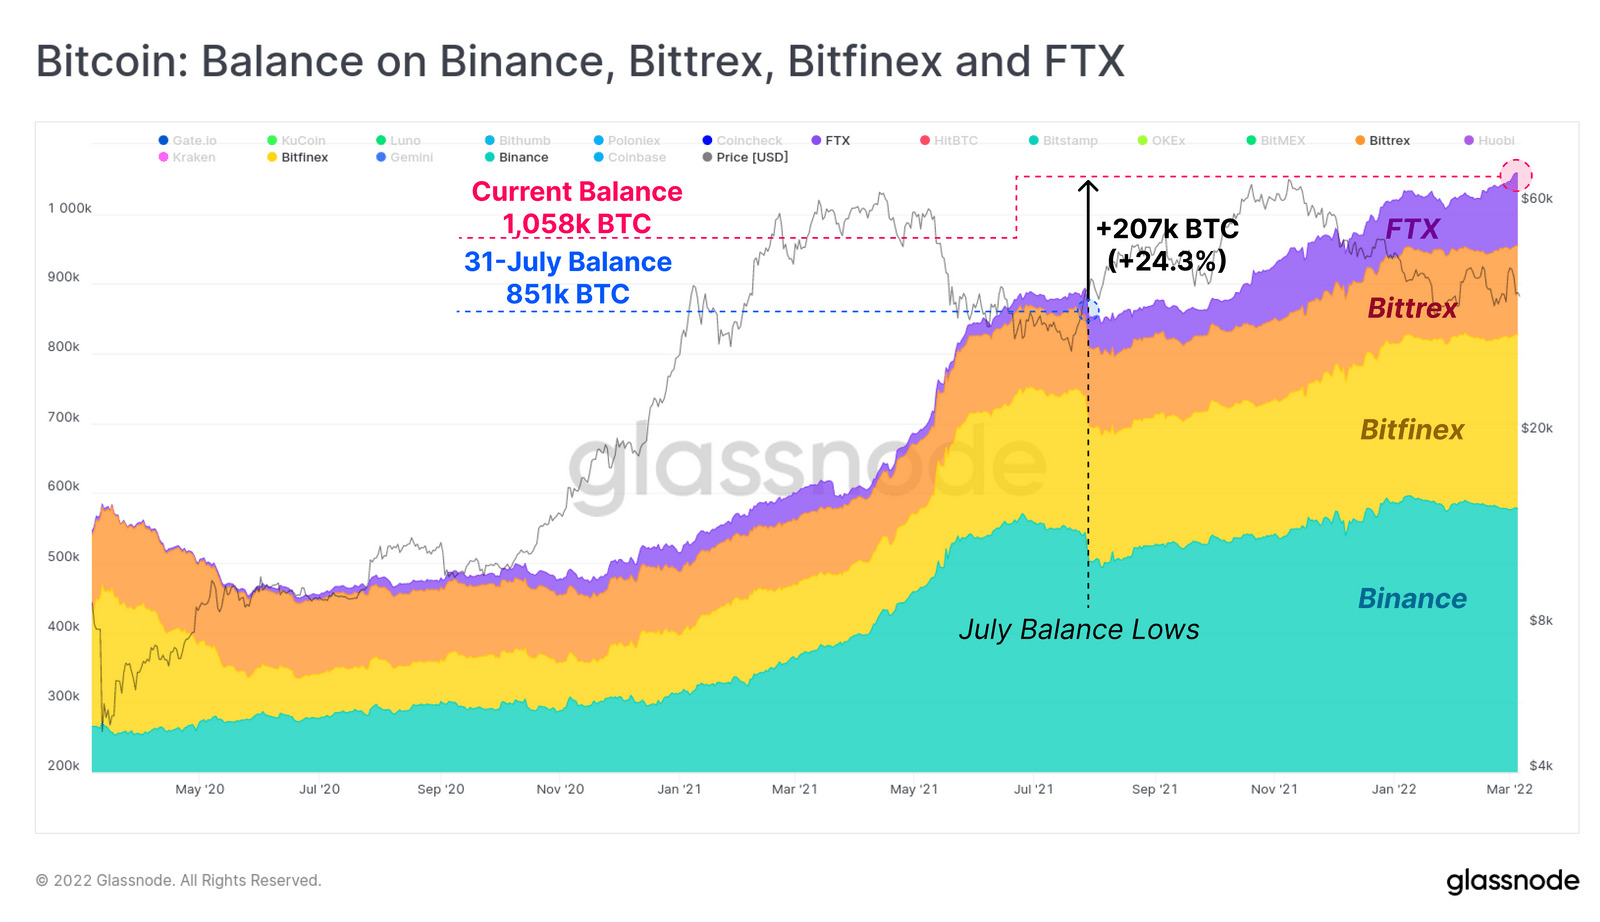 Lượng Bitcoin mà Binance, Bittrex, Bitfinex và FTX đang sở hữu. Nguồn: Glassnode